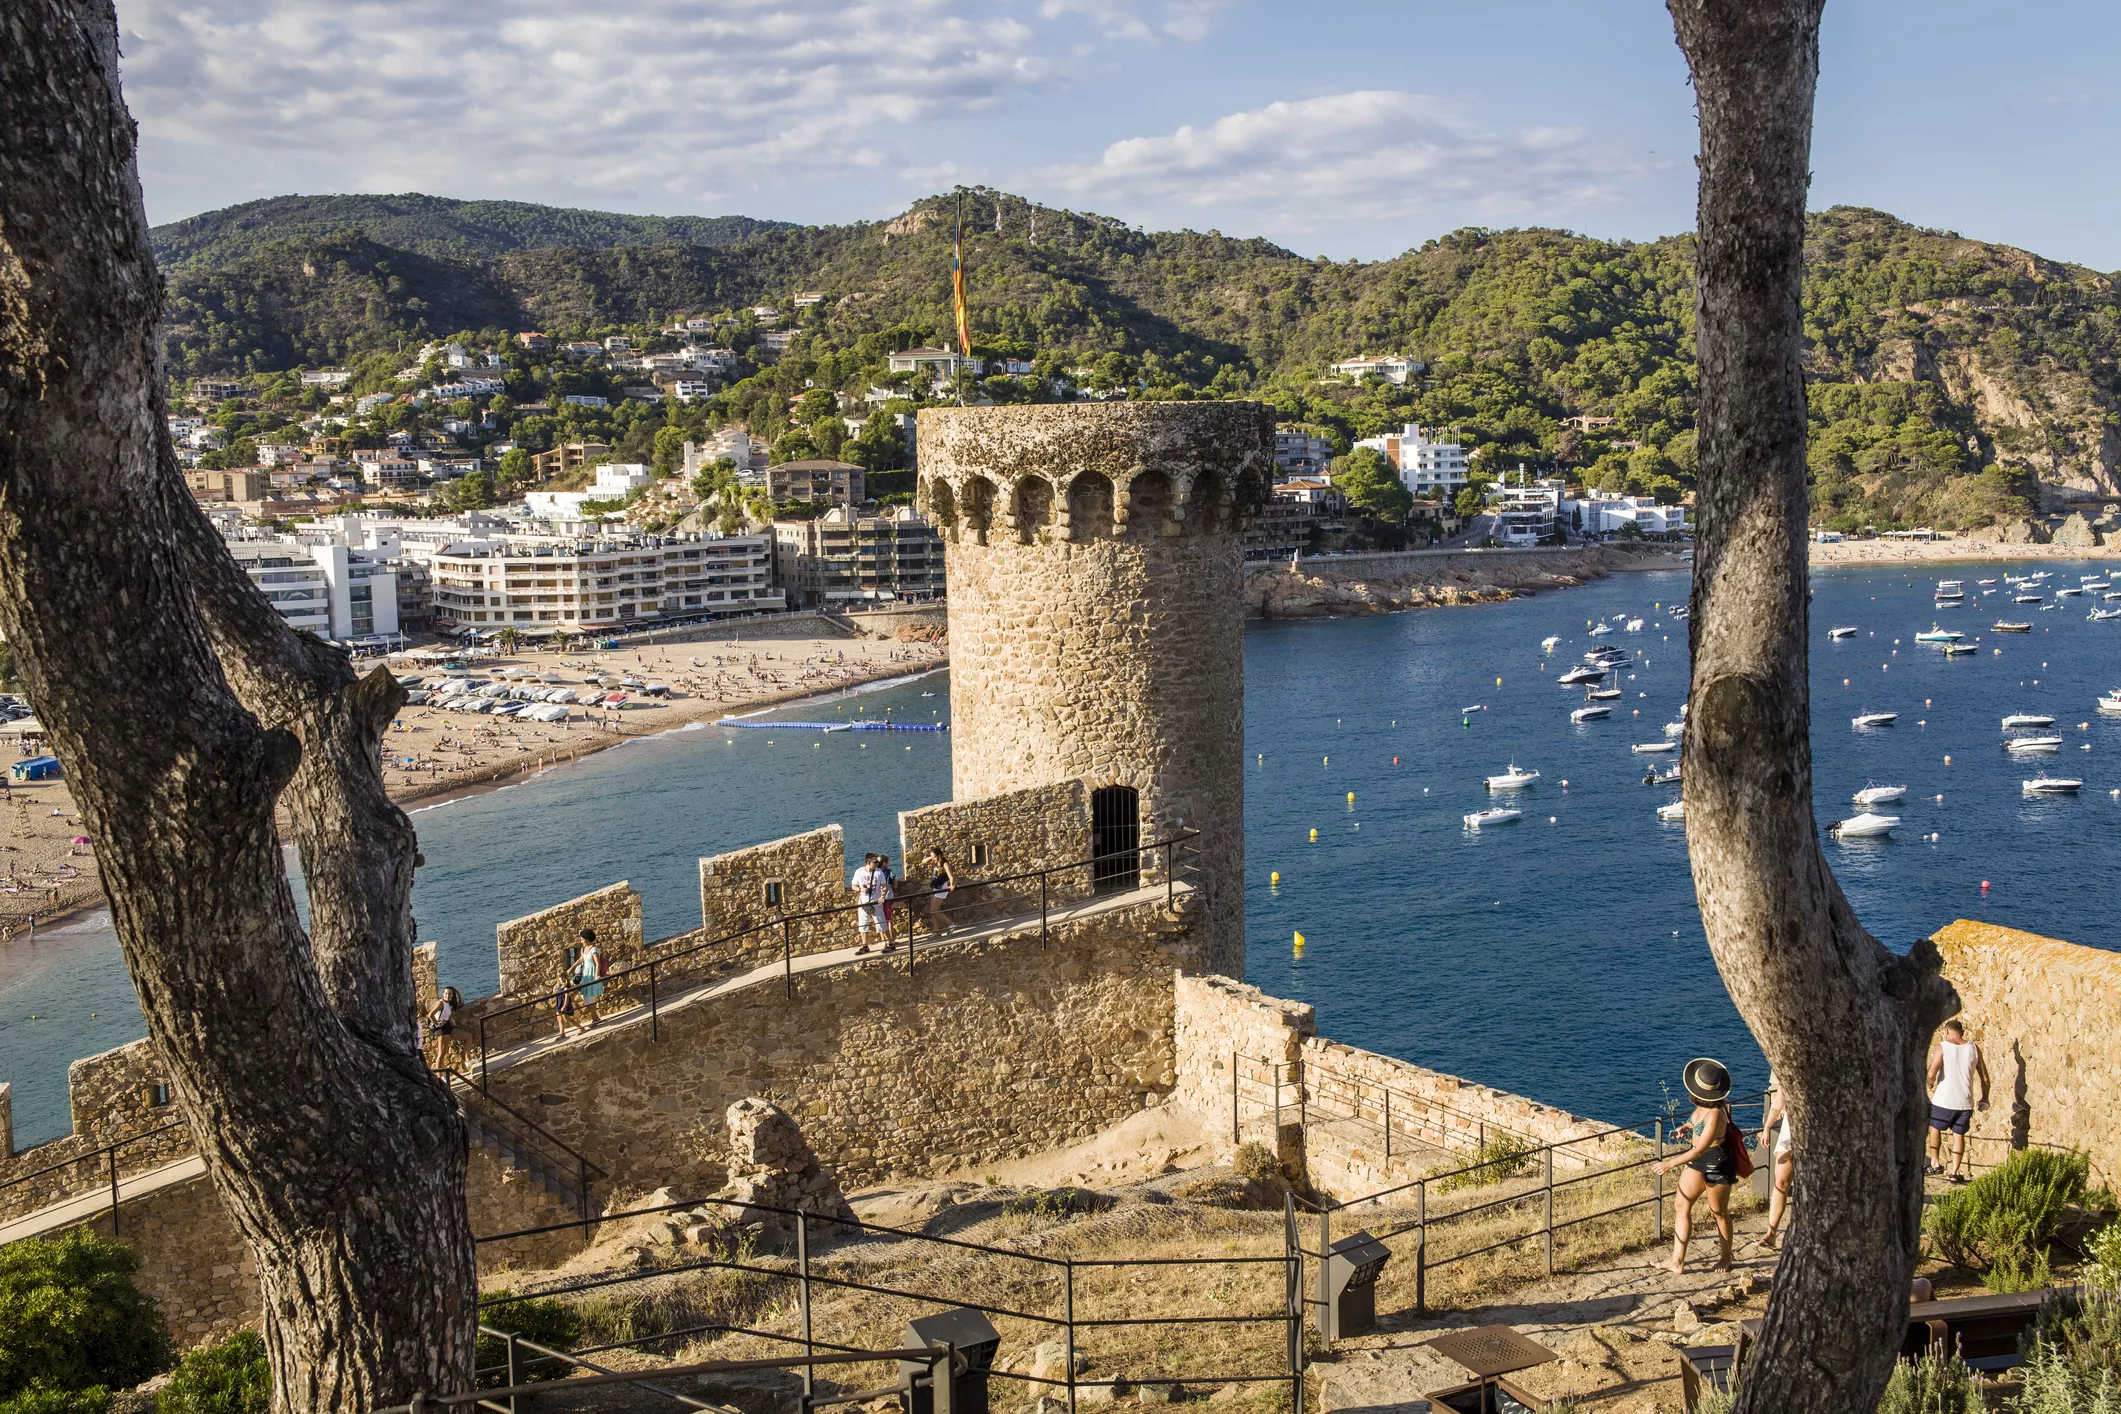 Durant el Govern d’Isabel II, la costa catalana i espanyola va passar de tenir 20 fars a 150. L’últim que es va construir fou el de Tossa (dalt). Emplaçat dalt d’un turó, feia llum fins a 35 km mar endins